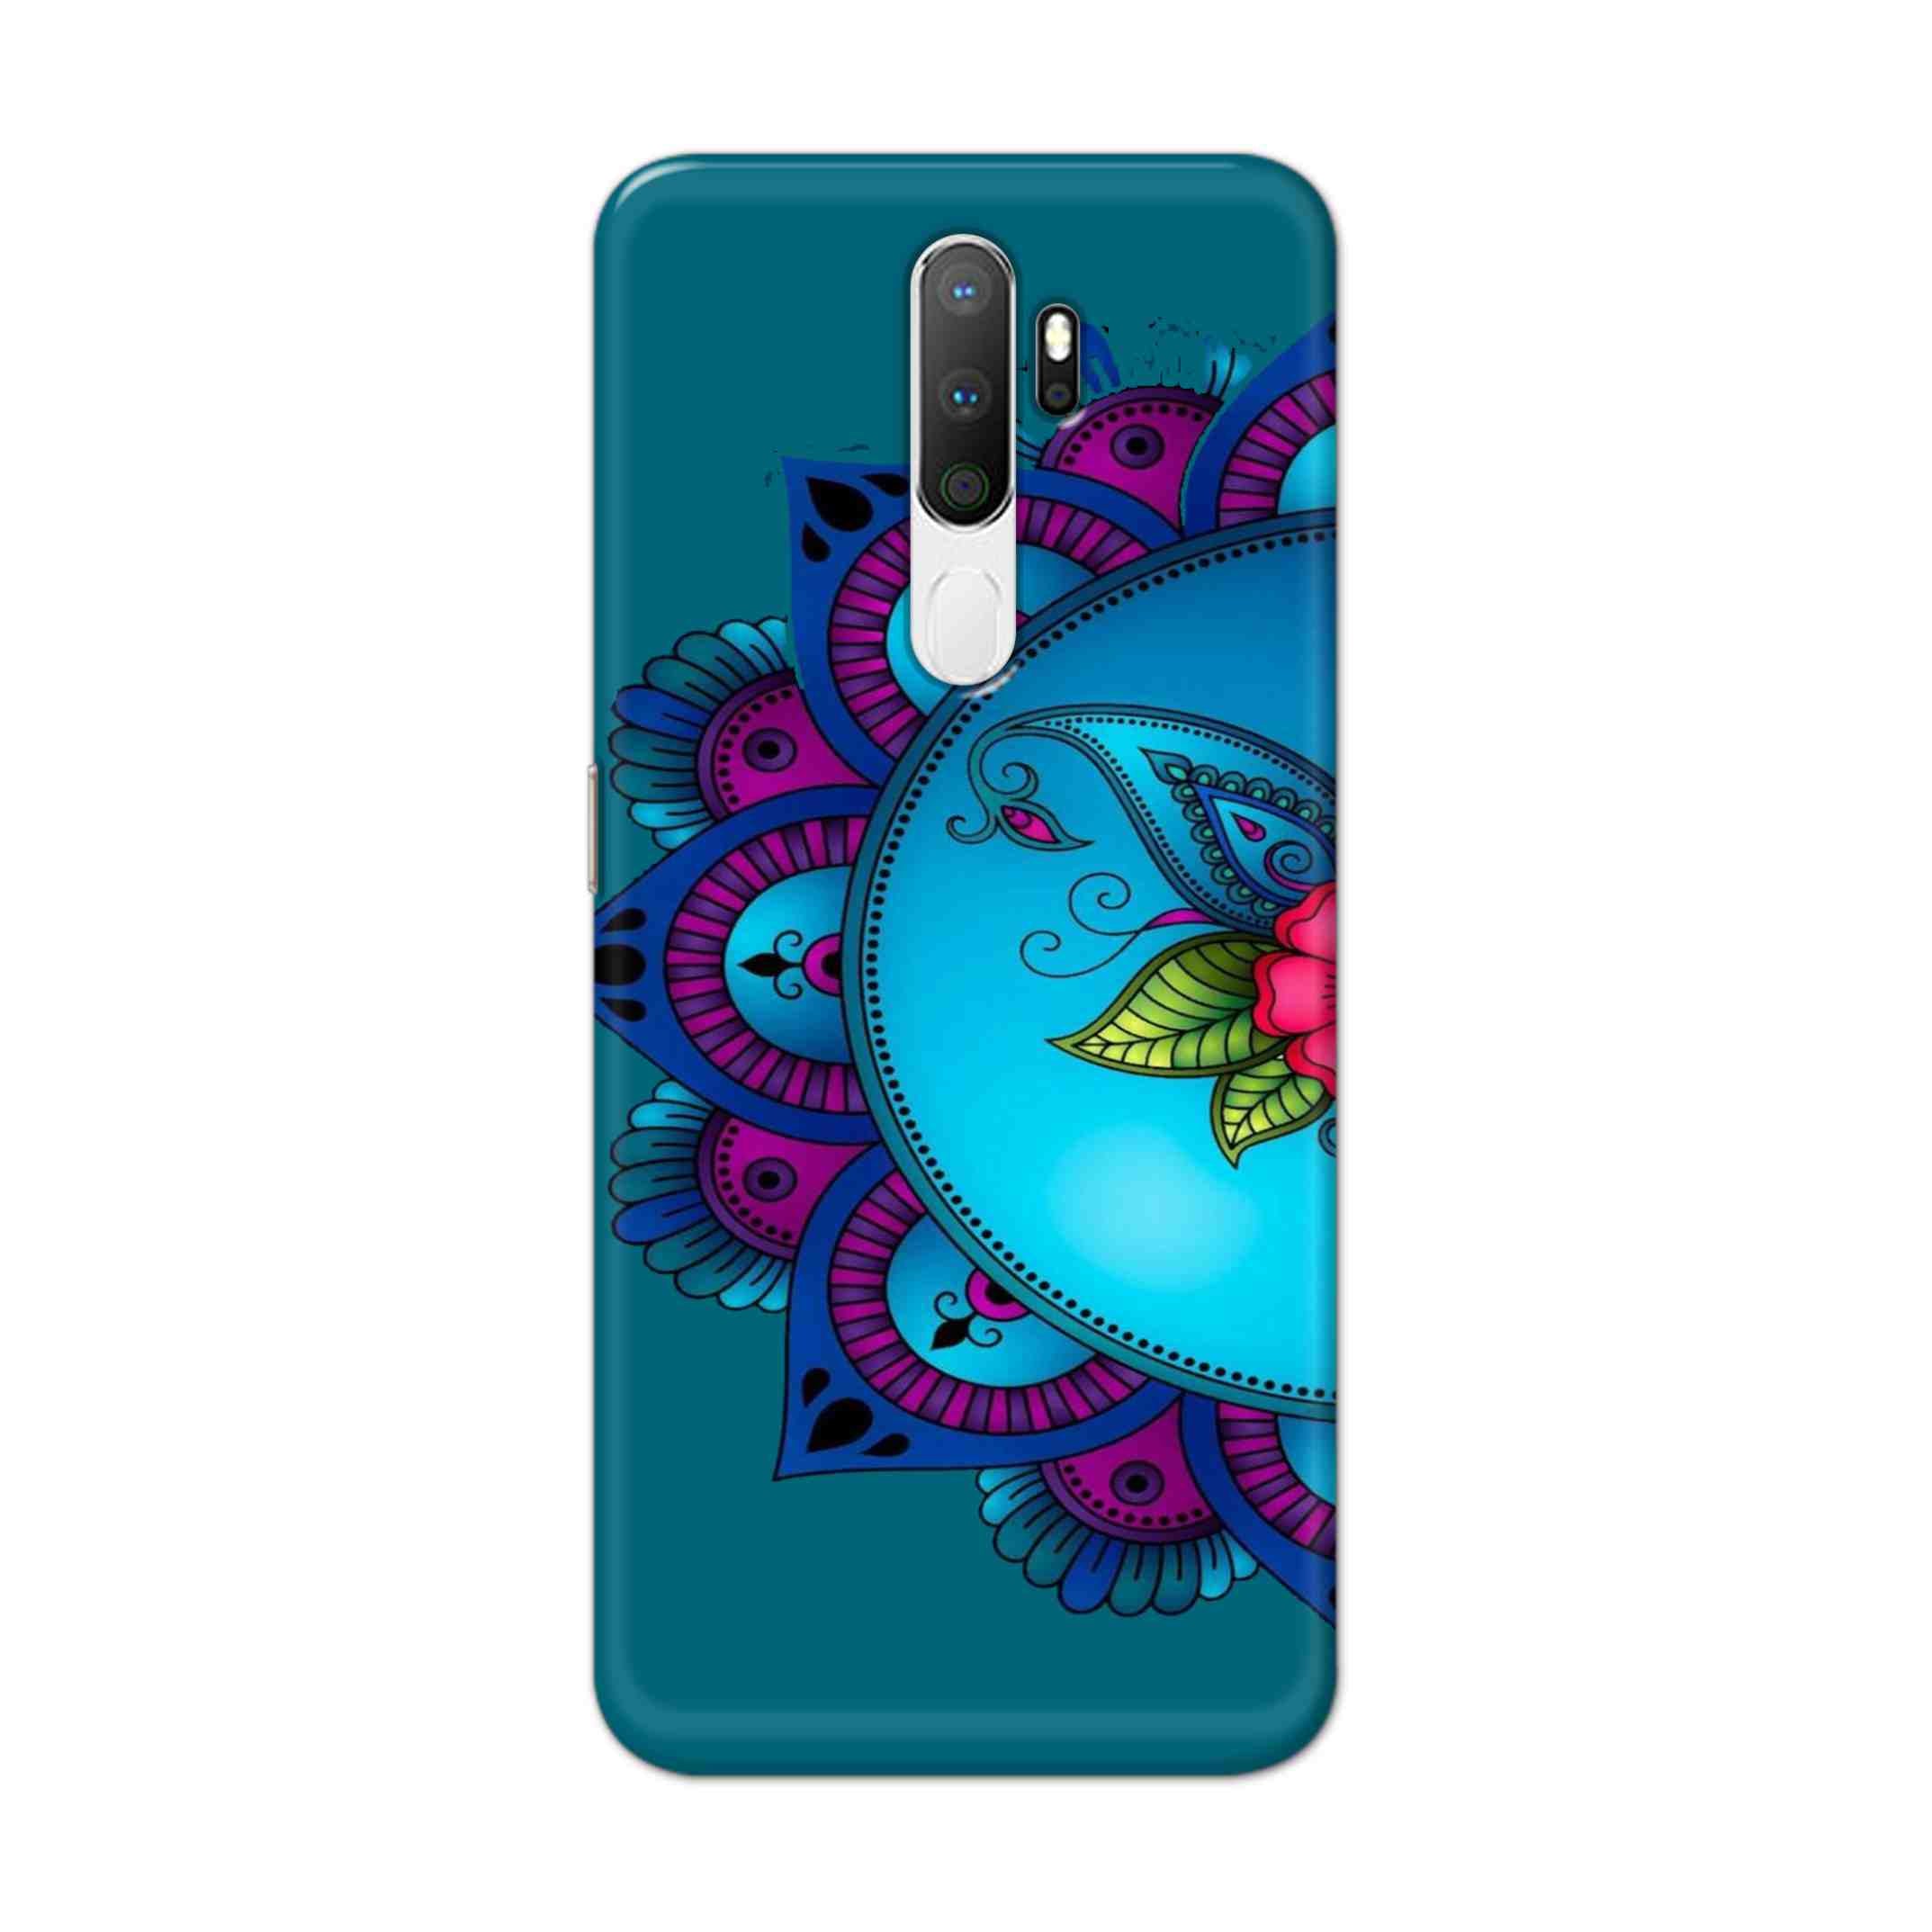 Buy Star Mandala Hard Back Mobile Phone Case Cover For Oppo A5 (2020) Online